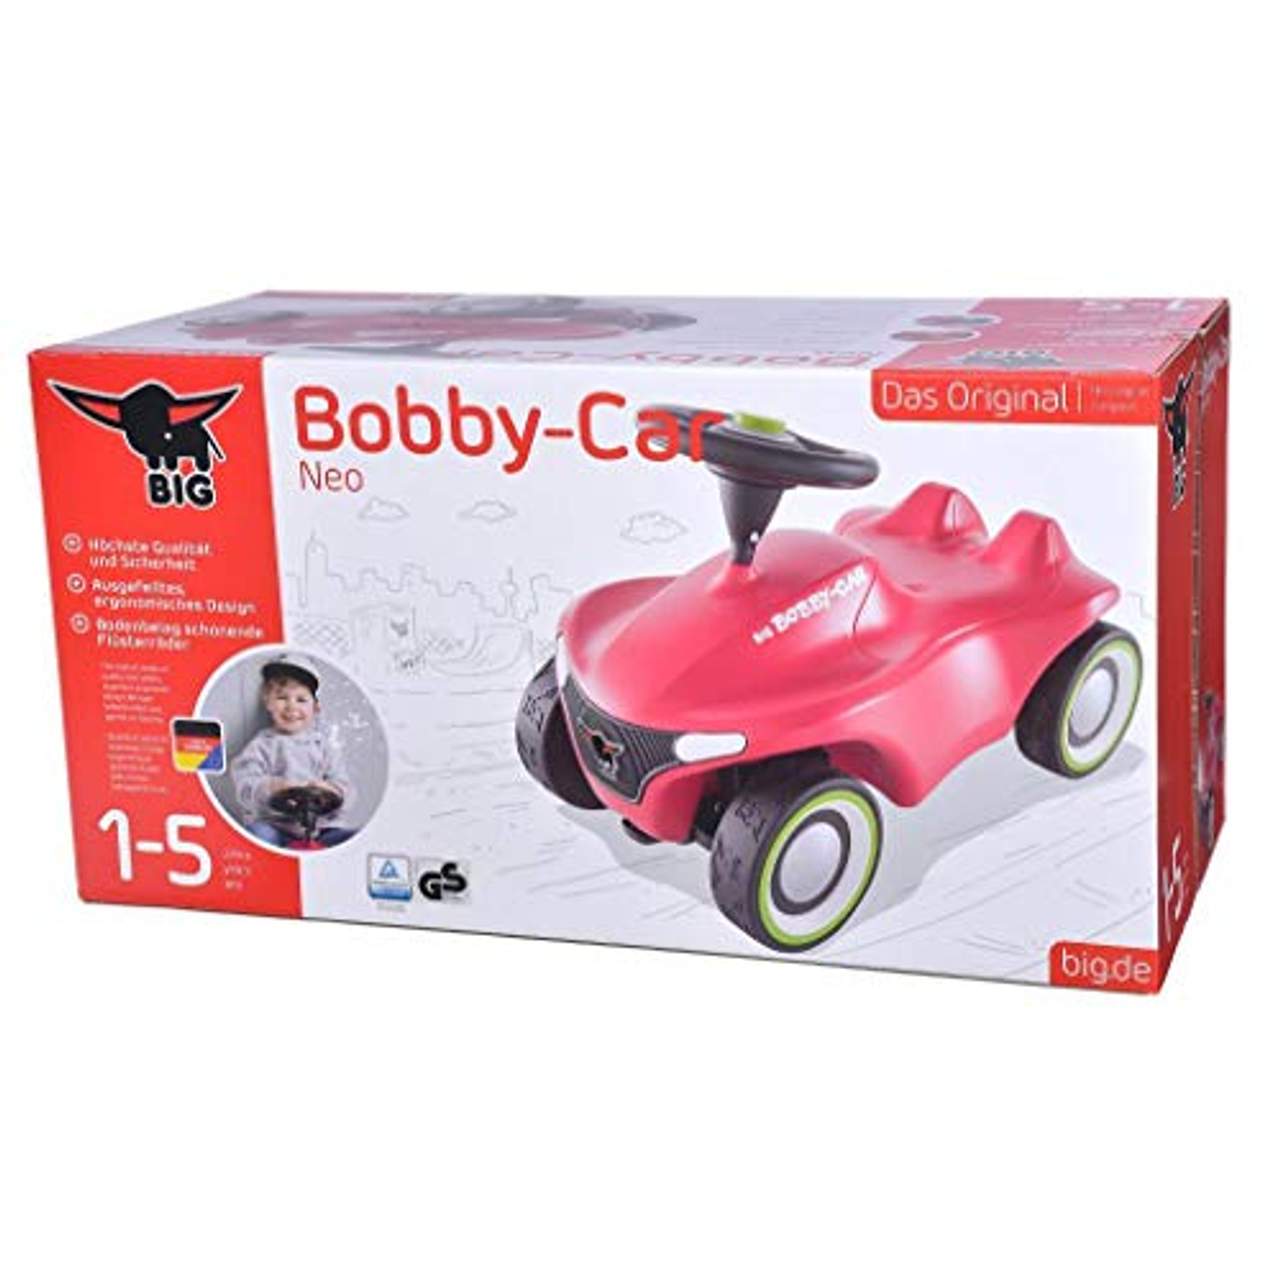 BIG-Bobby-Car Neo Pink Rutschfahrzeug